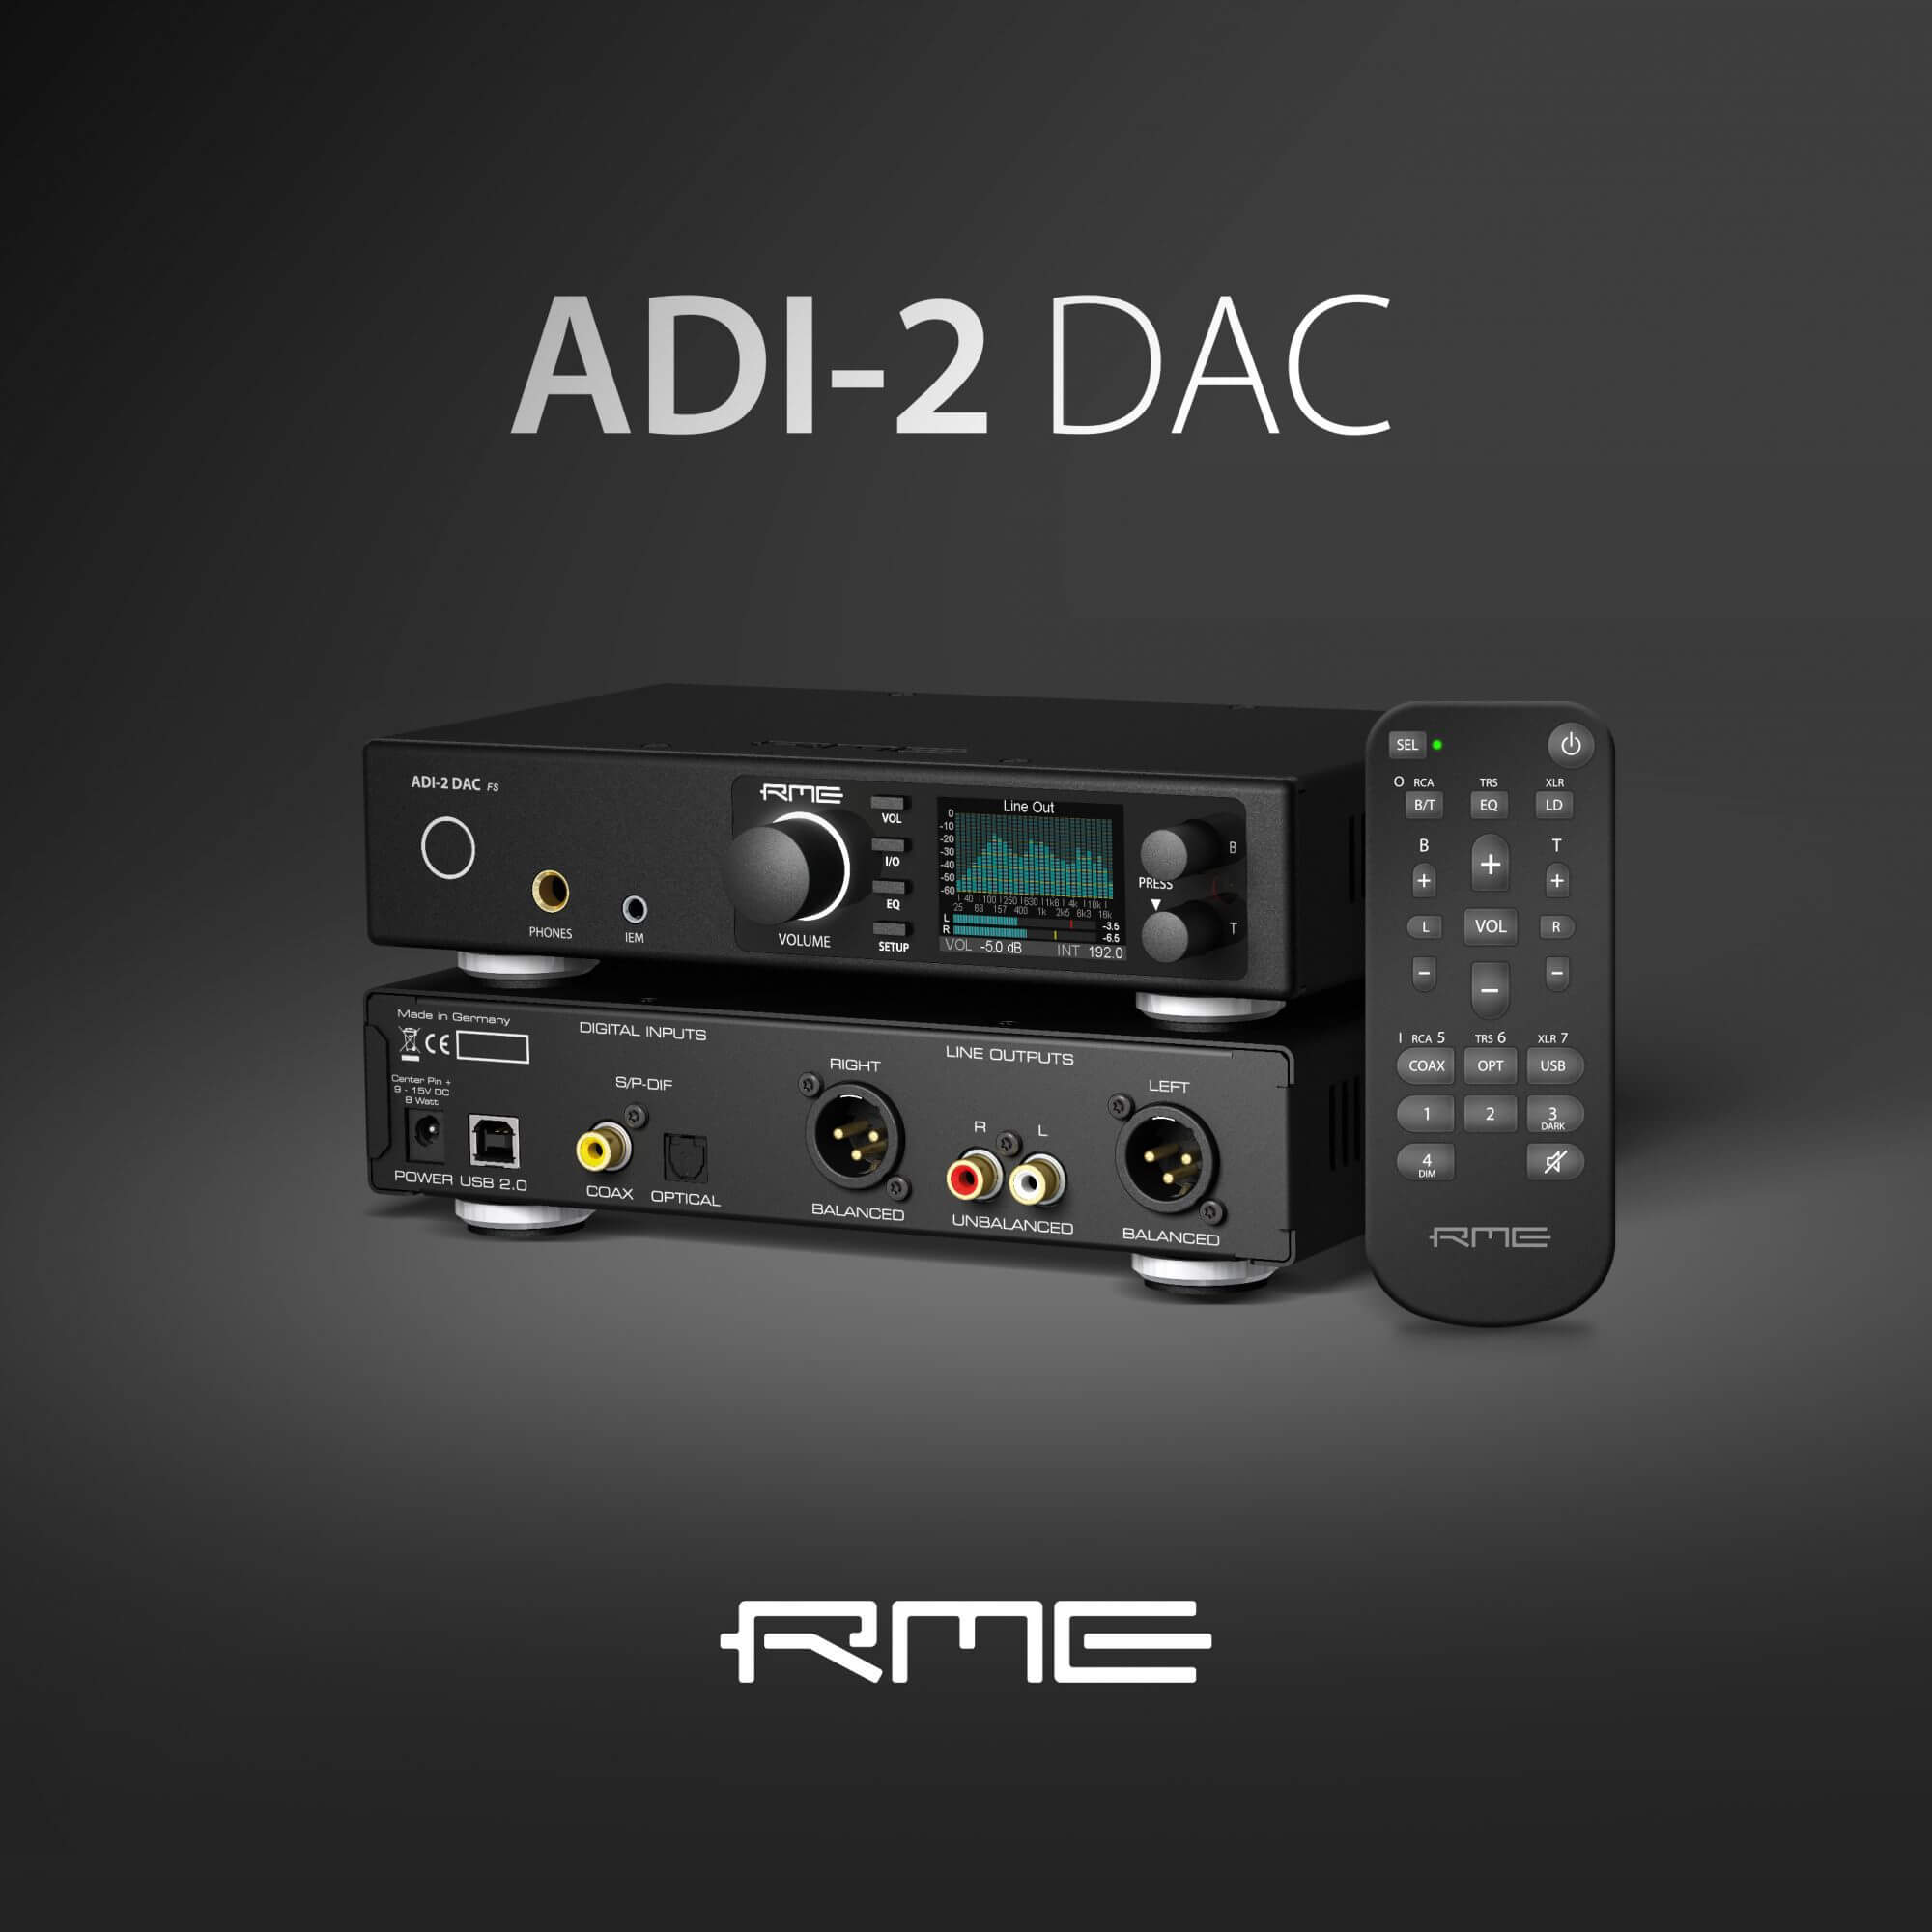 ADI-2 DAC